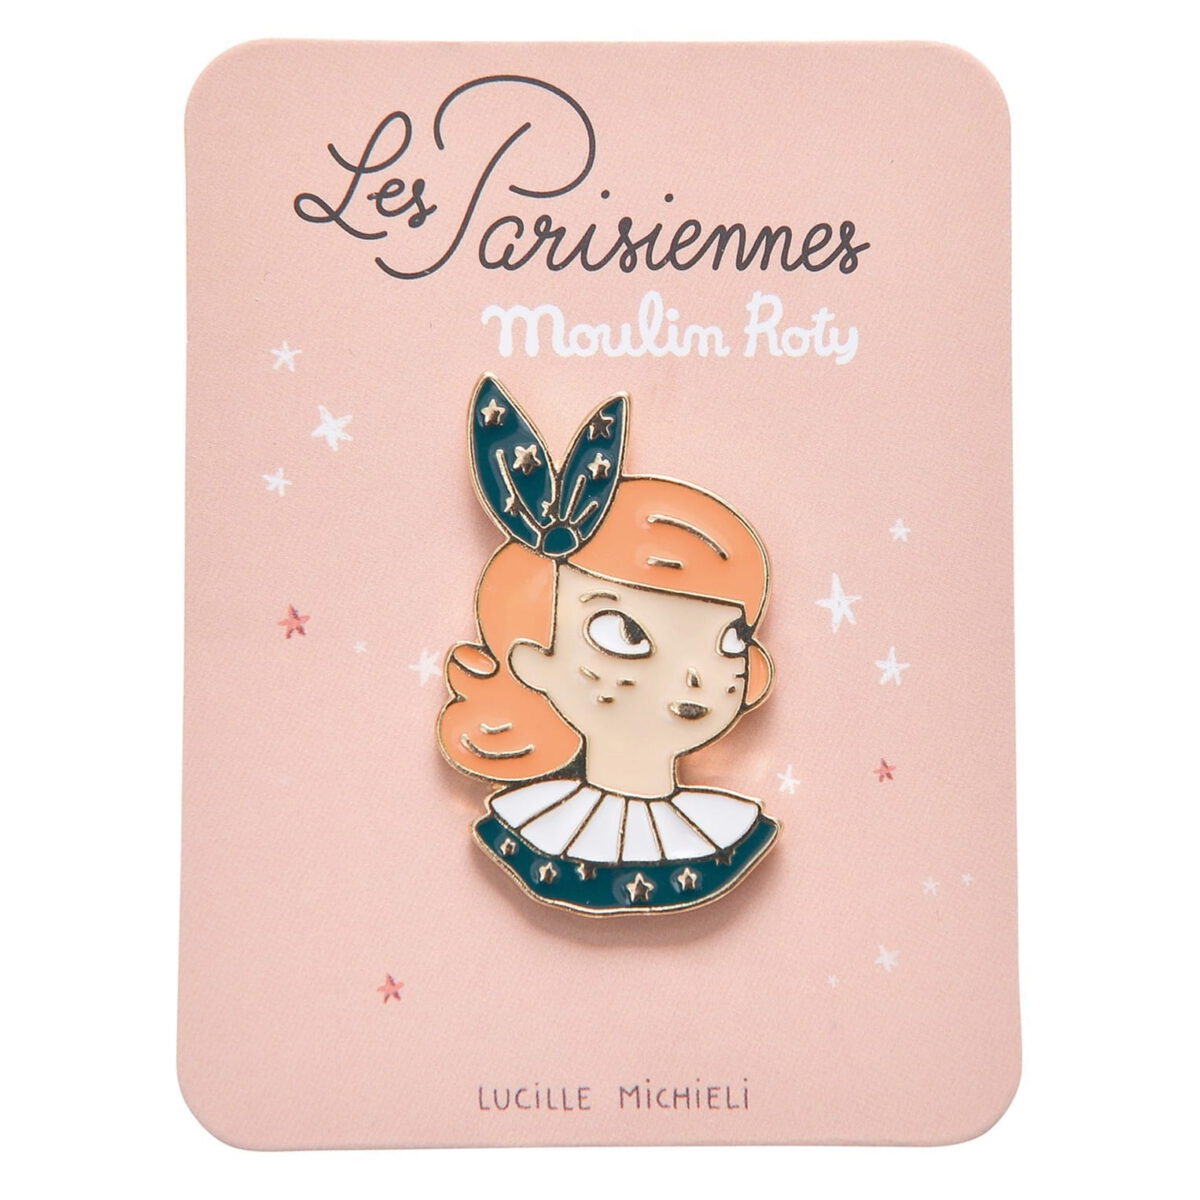 Przypinka Les Parisiennes doda  modny wygląd strojowi lub torbie. Wizerunek Constance zilustrowany przez Lucille Michieli to wymyślny dodatek zarówno dla dzieci, jak i dorosłych.